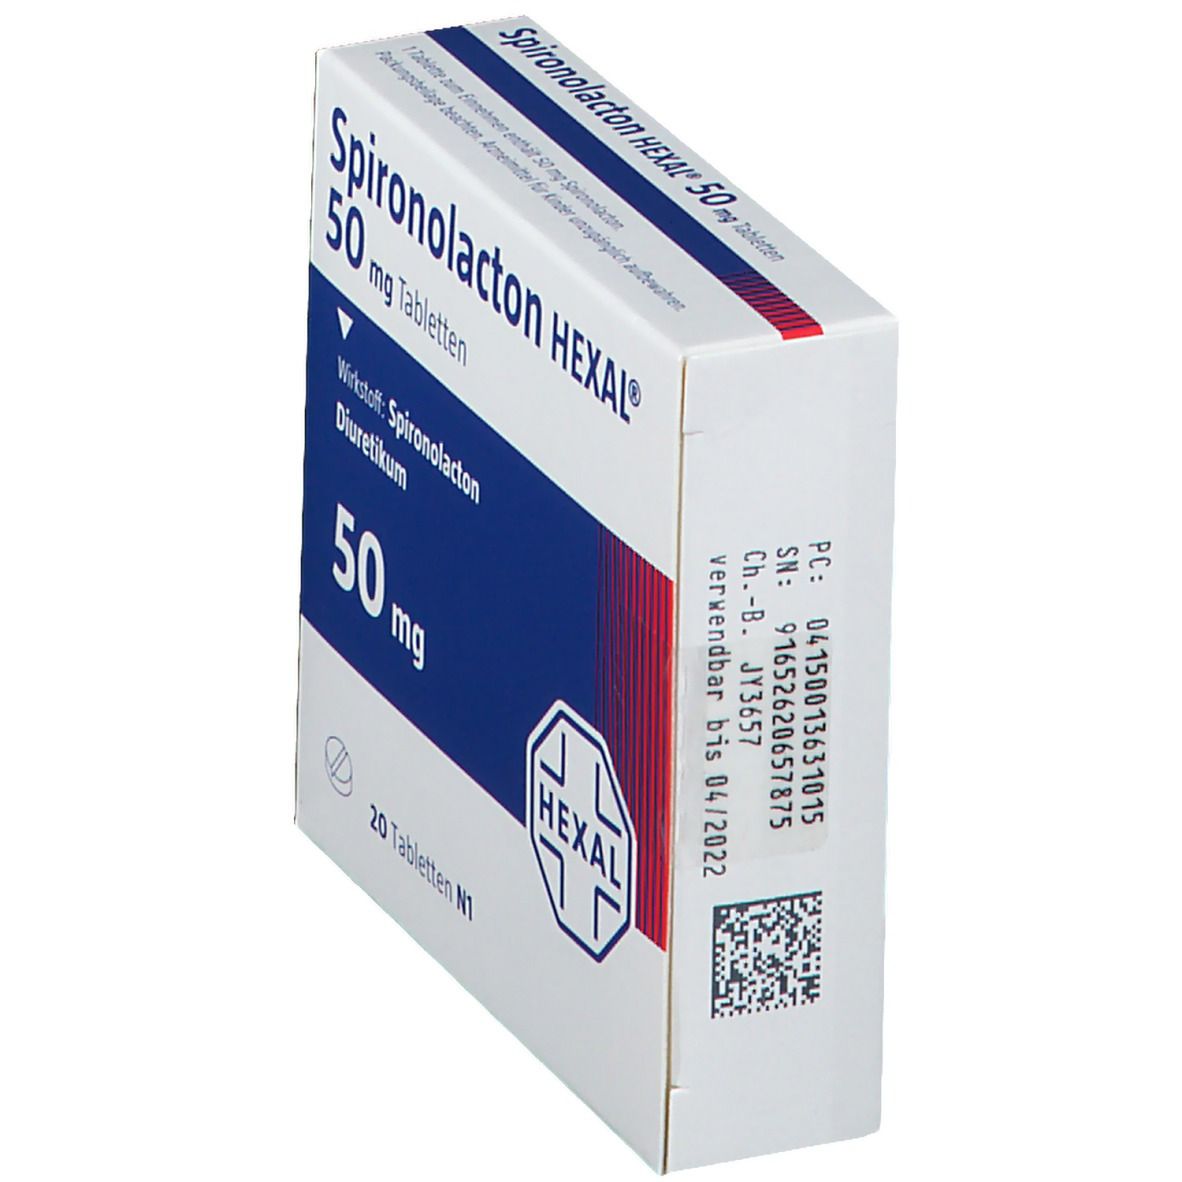 Spironolacton HEXAL® 50 mg